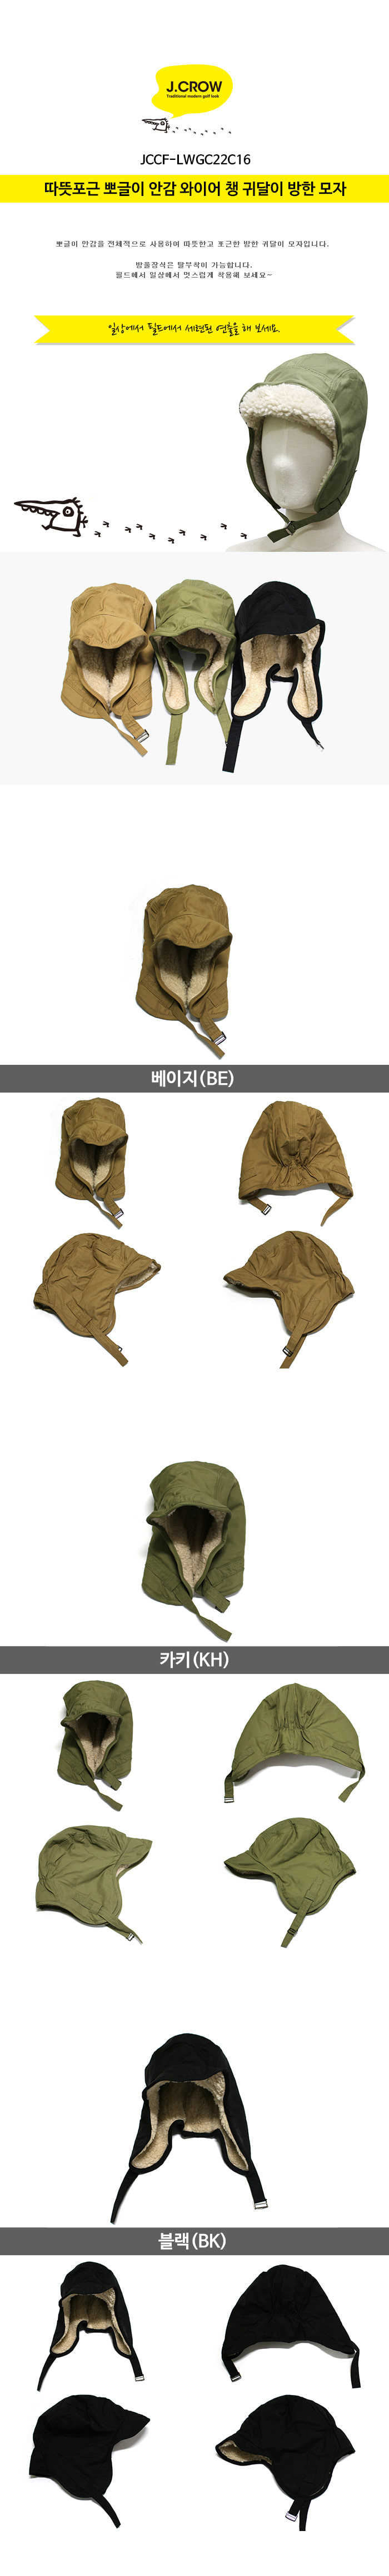 제이크로우 따뜻포근 뽀글이 안감 와이어 챙 귀달이 방한 모자 (JCCF-LWGC22C16) 색상 설명